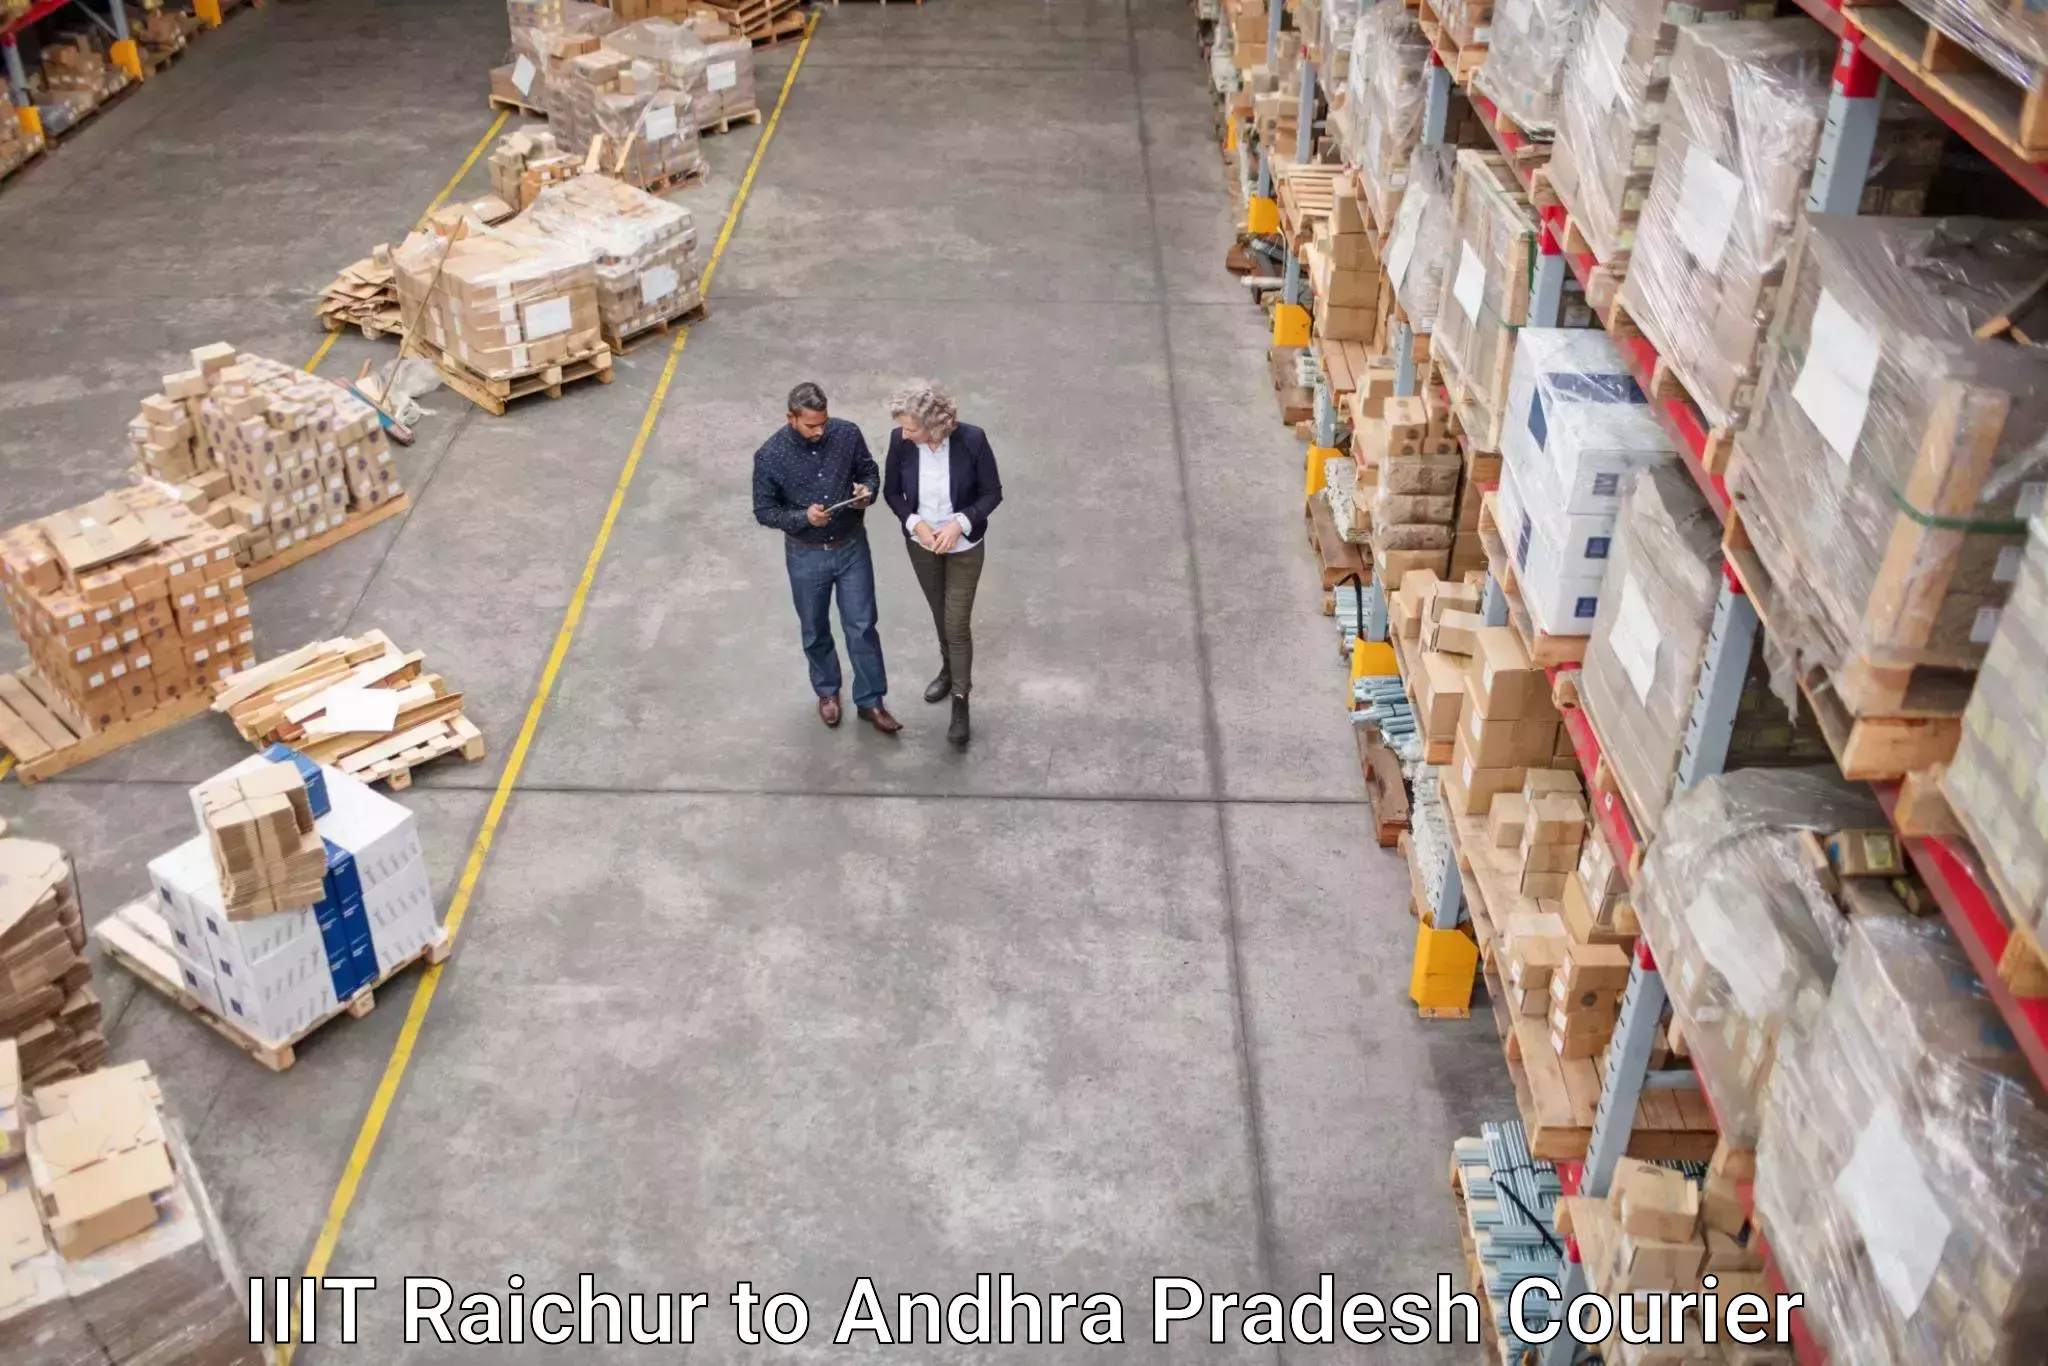 Small parcel delivery IIIT Raichur to Allagadda